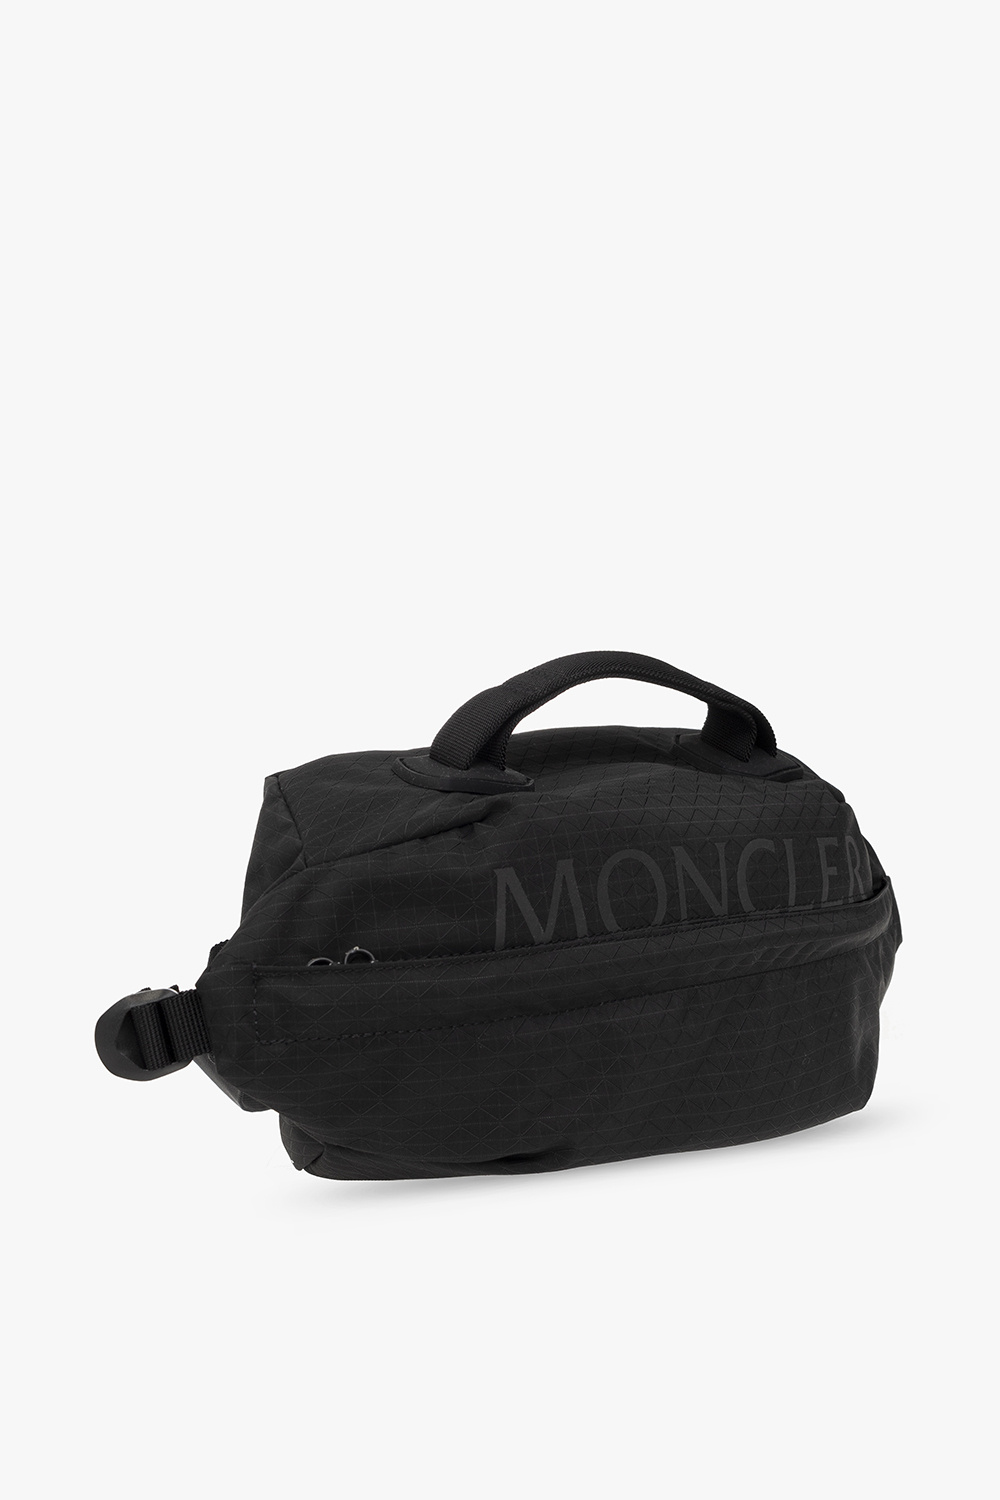 Moncler 'Jitney 5.0 crossbody bag